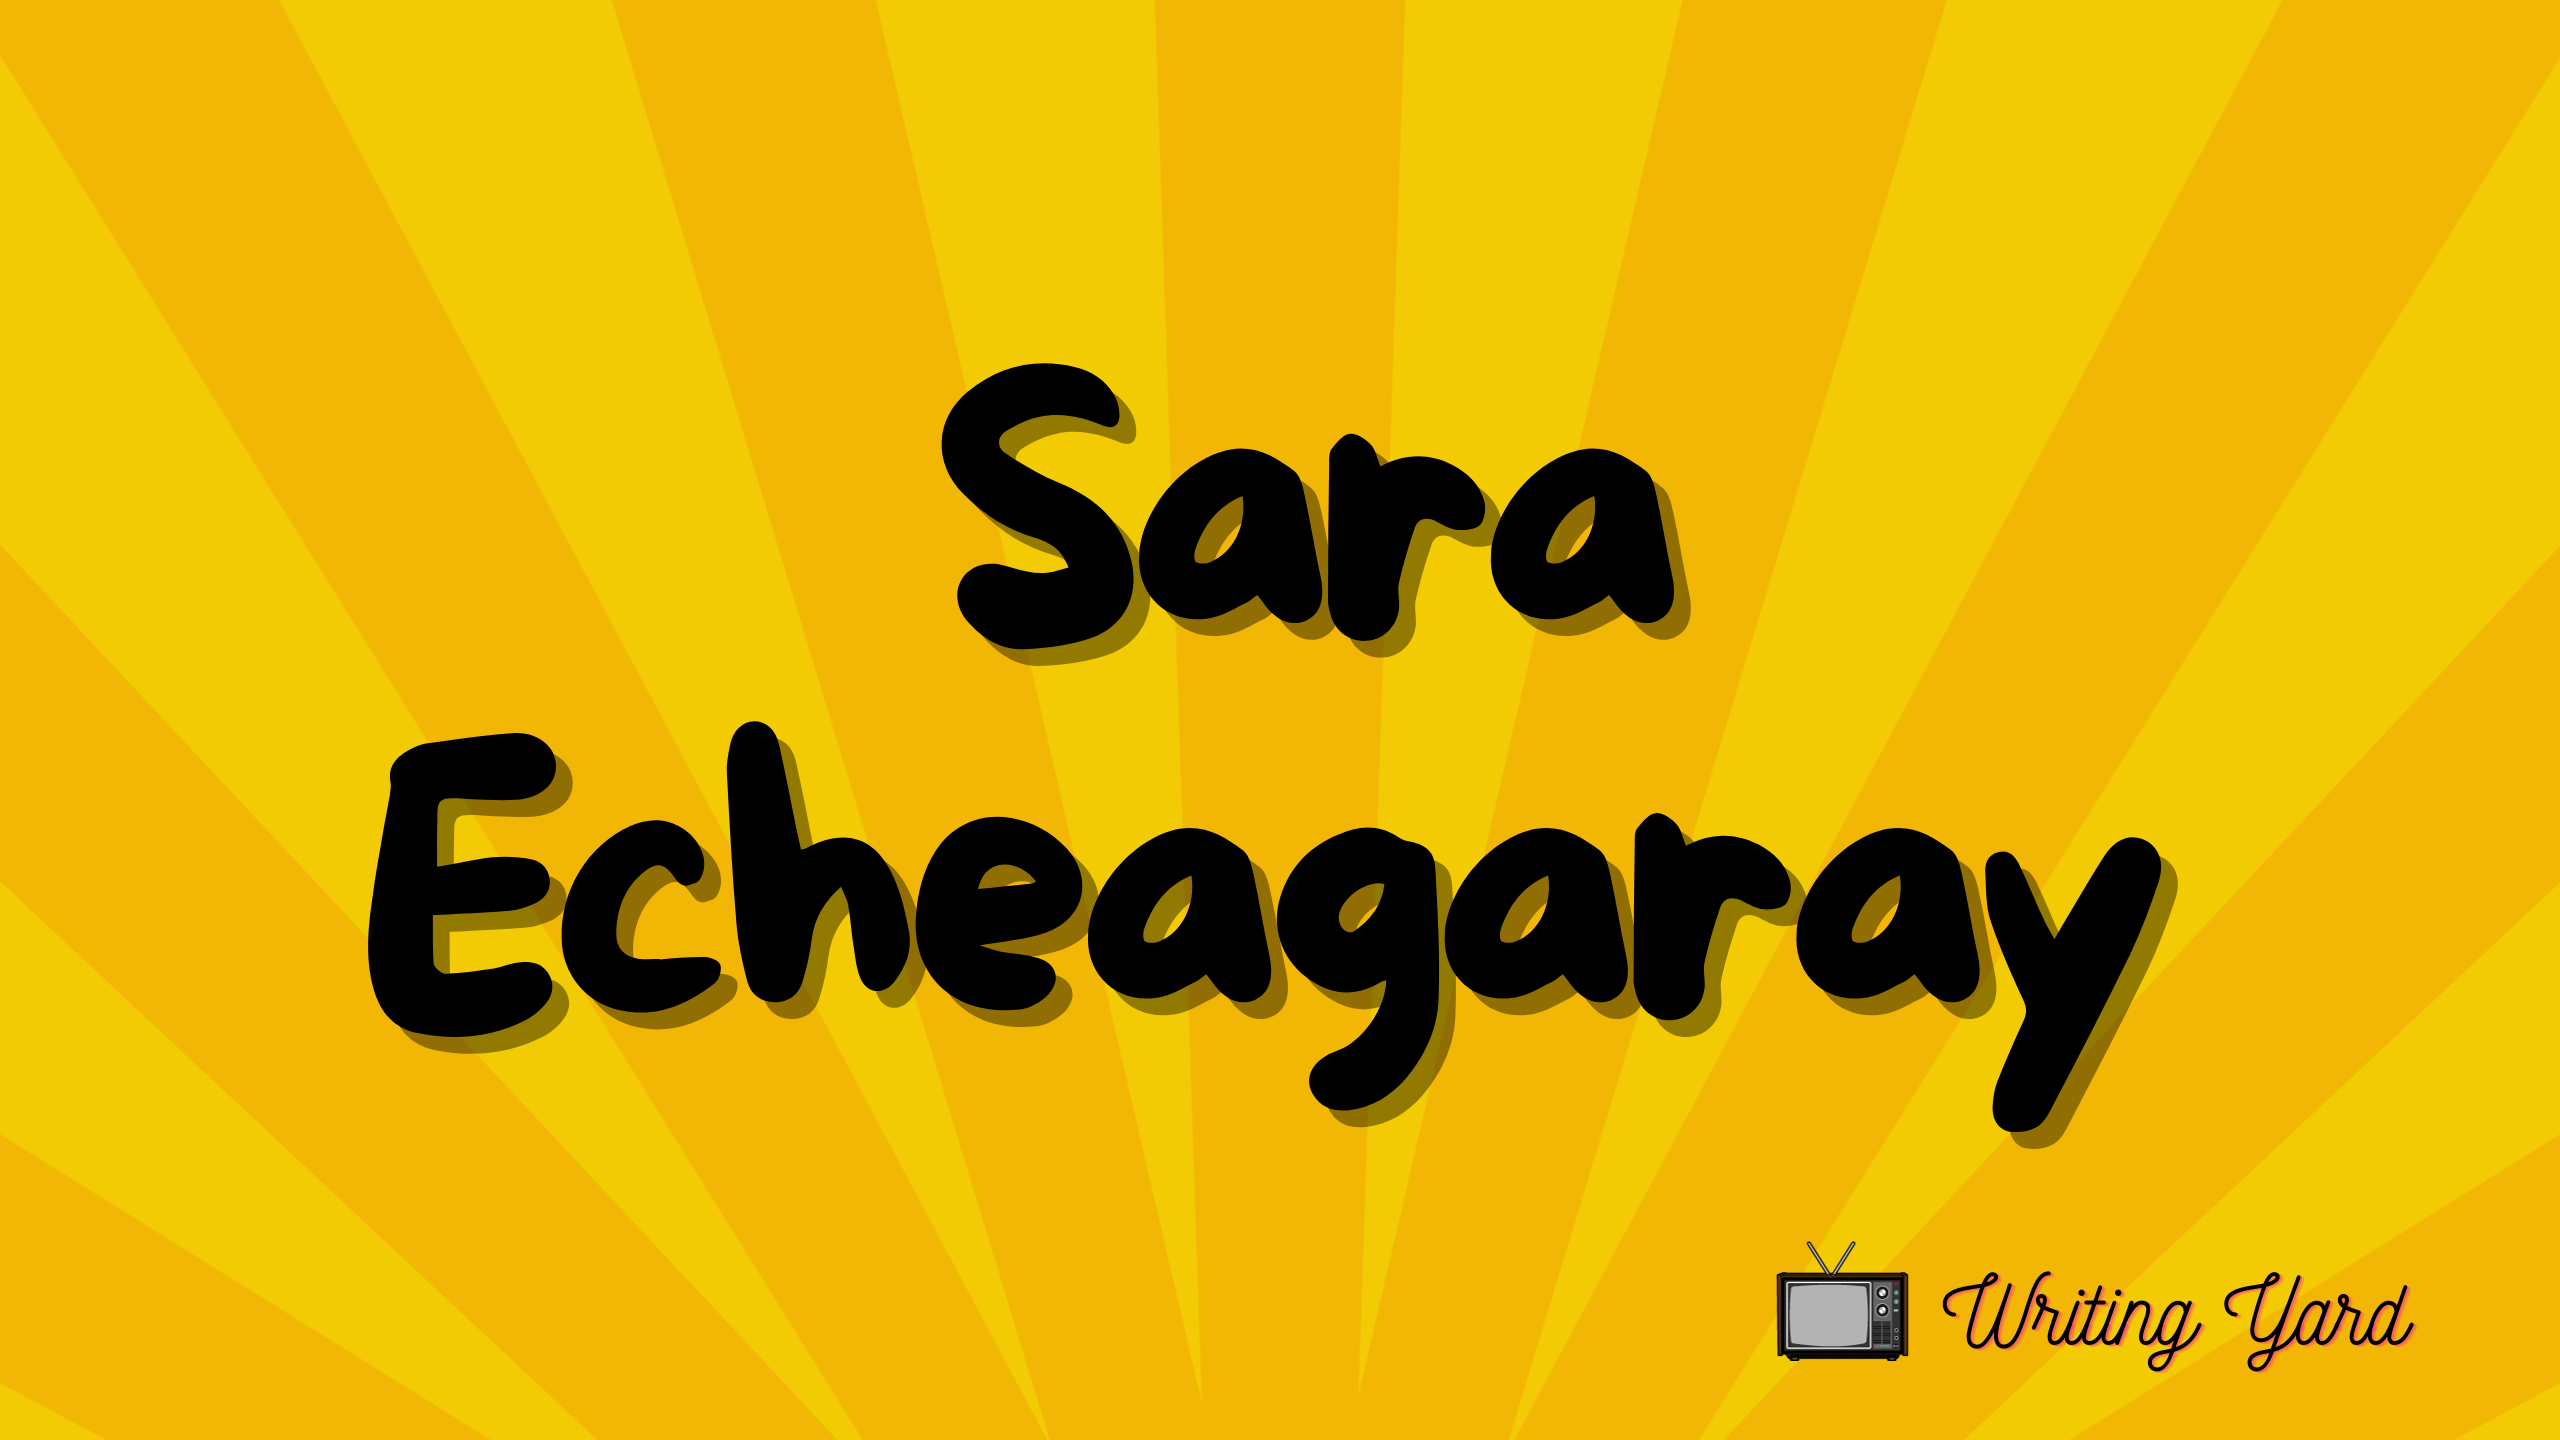 Sara Echeagaray